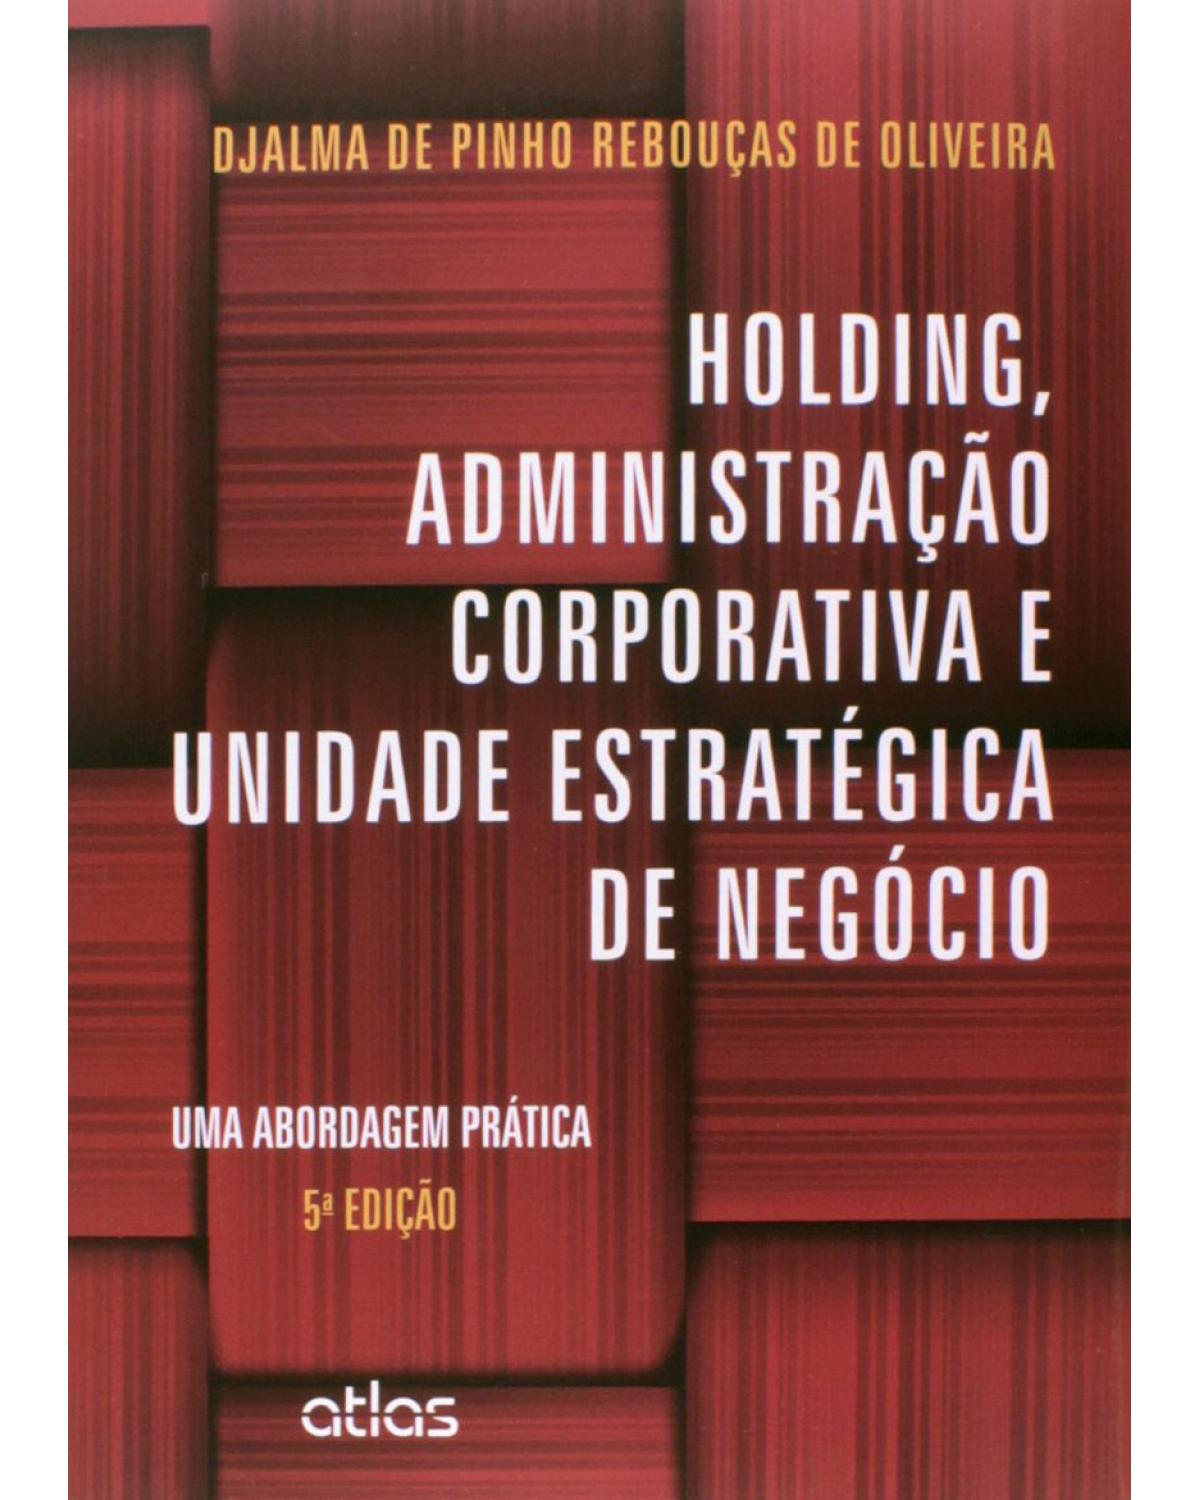 Holding, administração corporativa e unidade estratégica de negócio - Uma abordagem prática - 5ª Edição | 2014